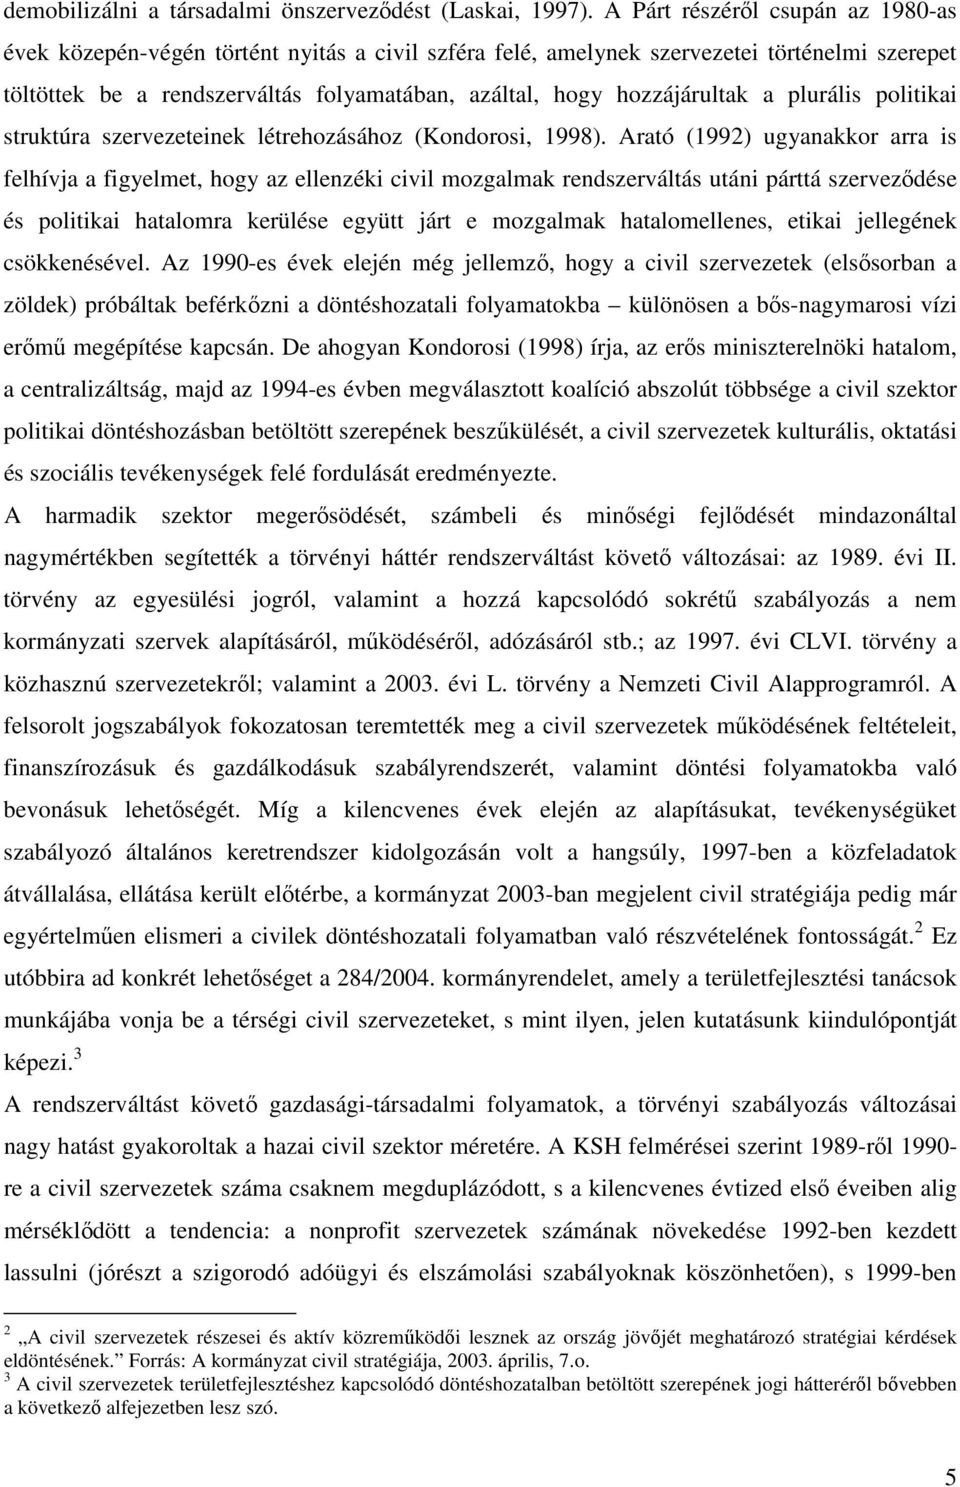 hozzájárultak a plurális politikai struktúra szervezeteinek létrehozásához (Kondorosi, 1998).